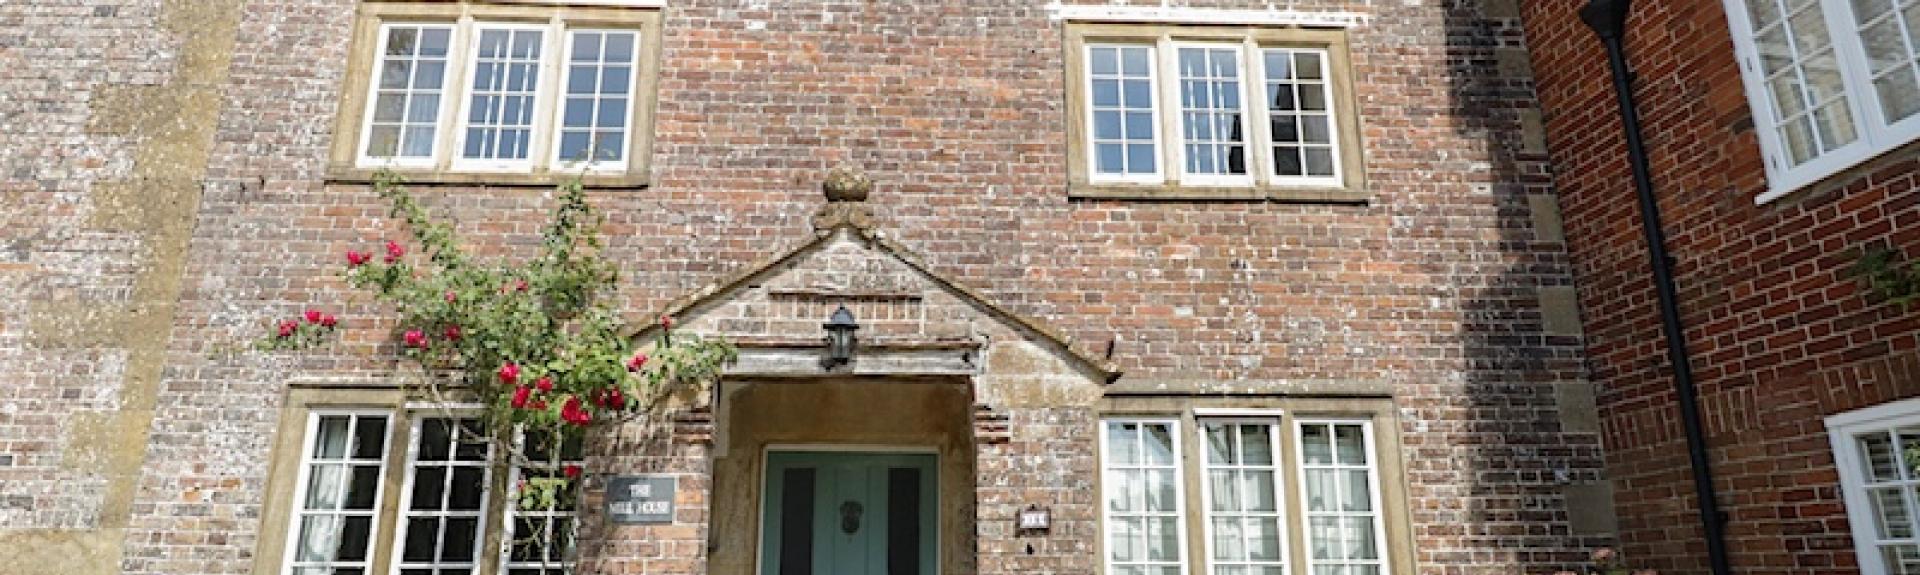 A 3-storey, brick-built, Dorset Mill House overlooks a cobbled courtyard.